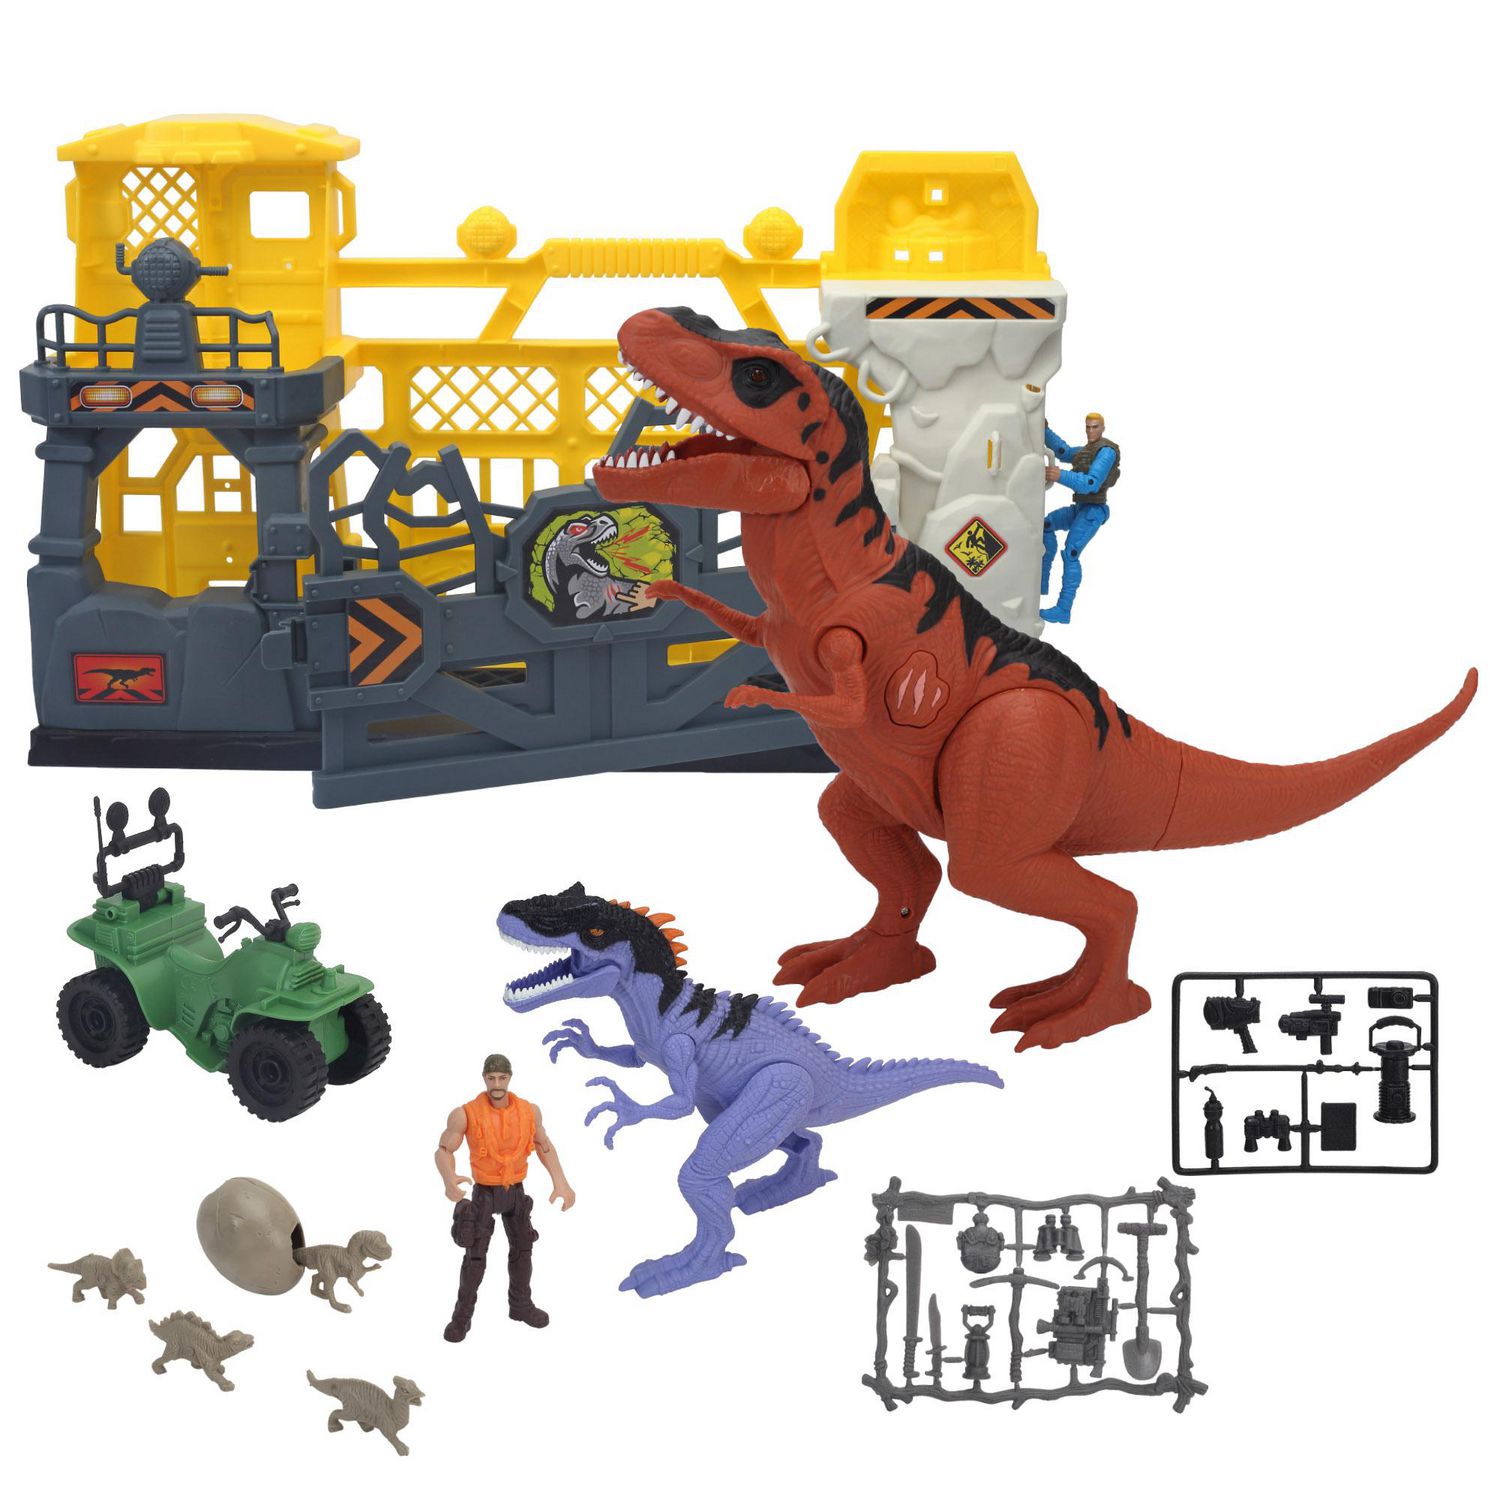 dinosaur costume for kids - Achat en ligne